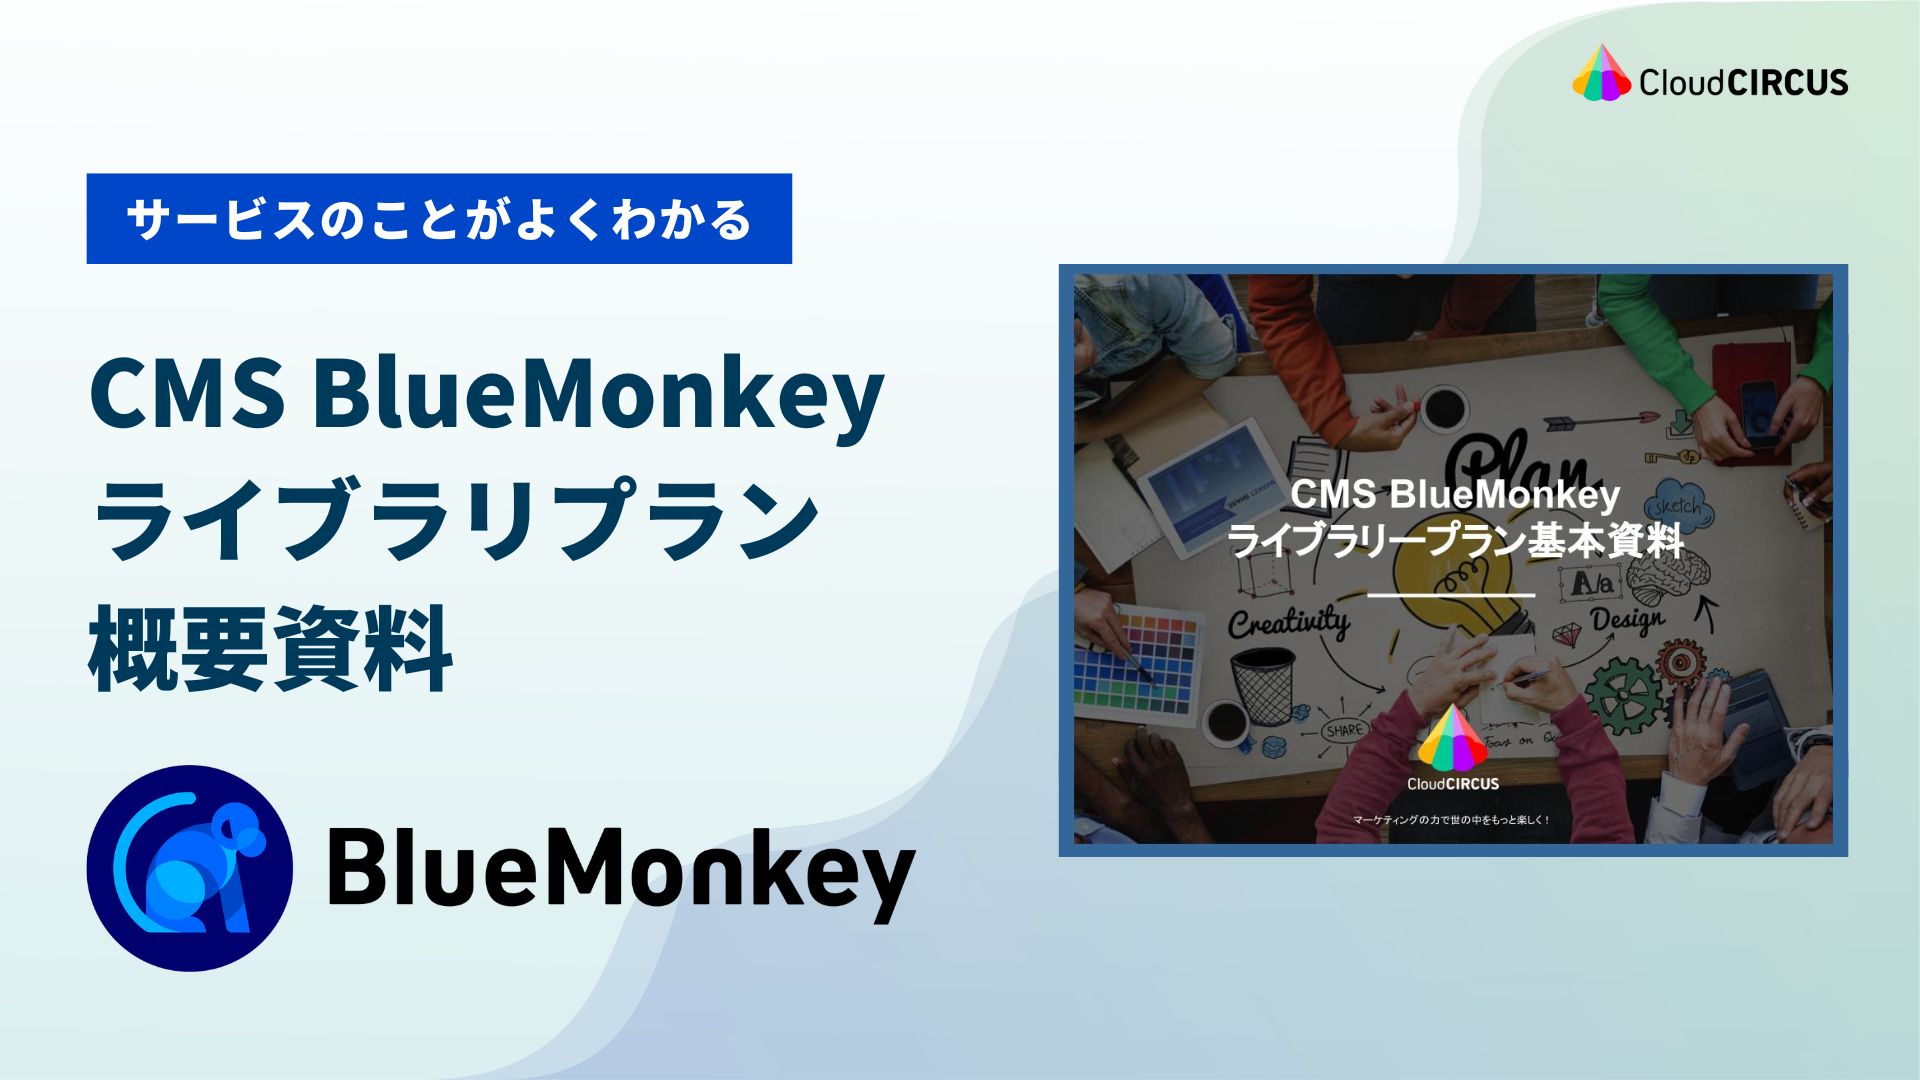 BlueMonkey ライブラリプラン概要資料